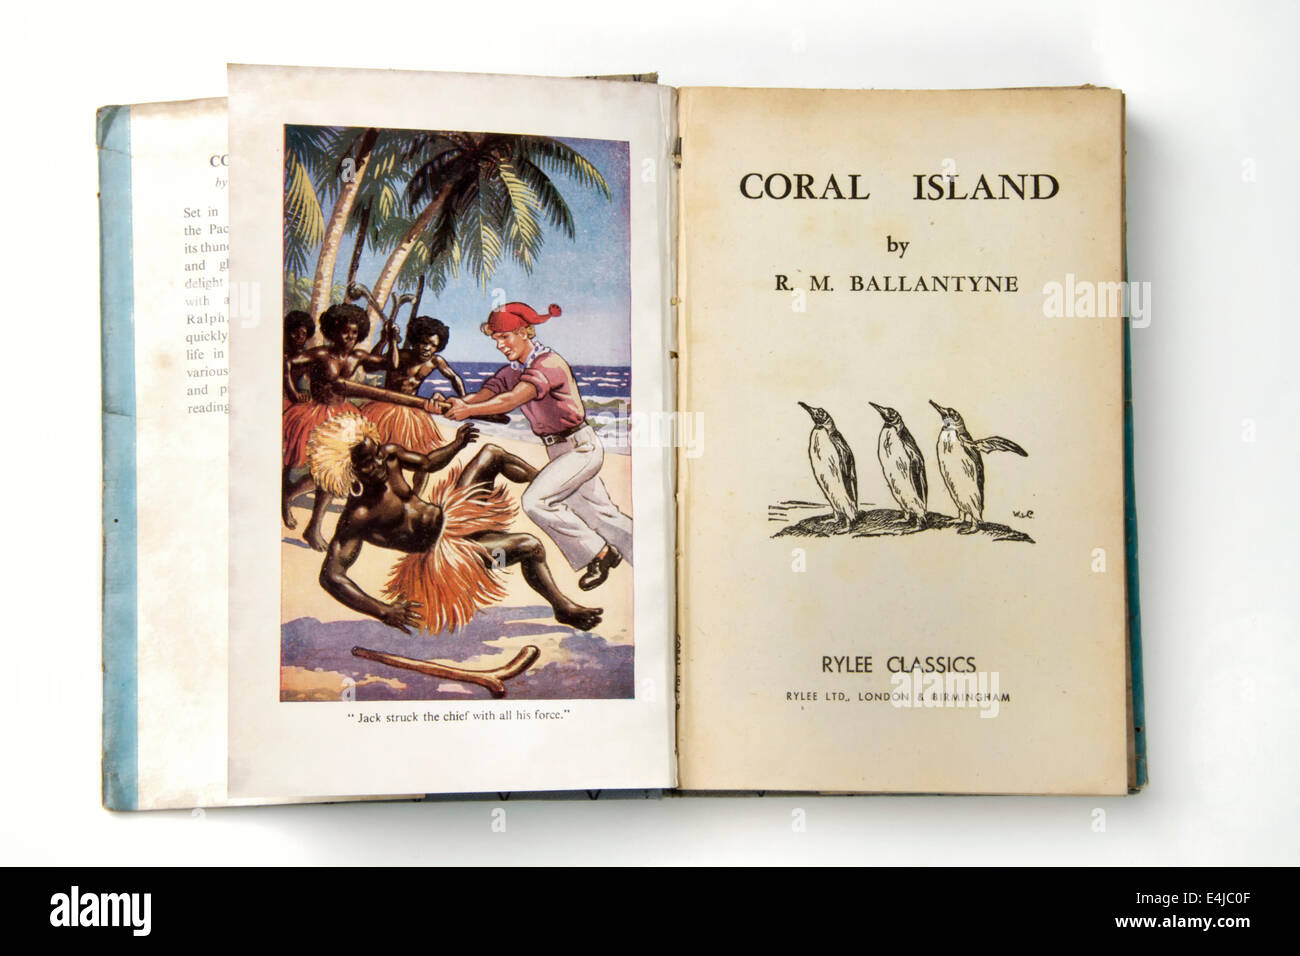 1950 copie du livre l'Ile de Corail, par R M Ballantyne Banque D'Images